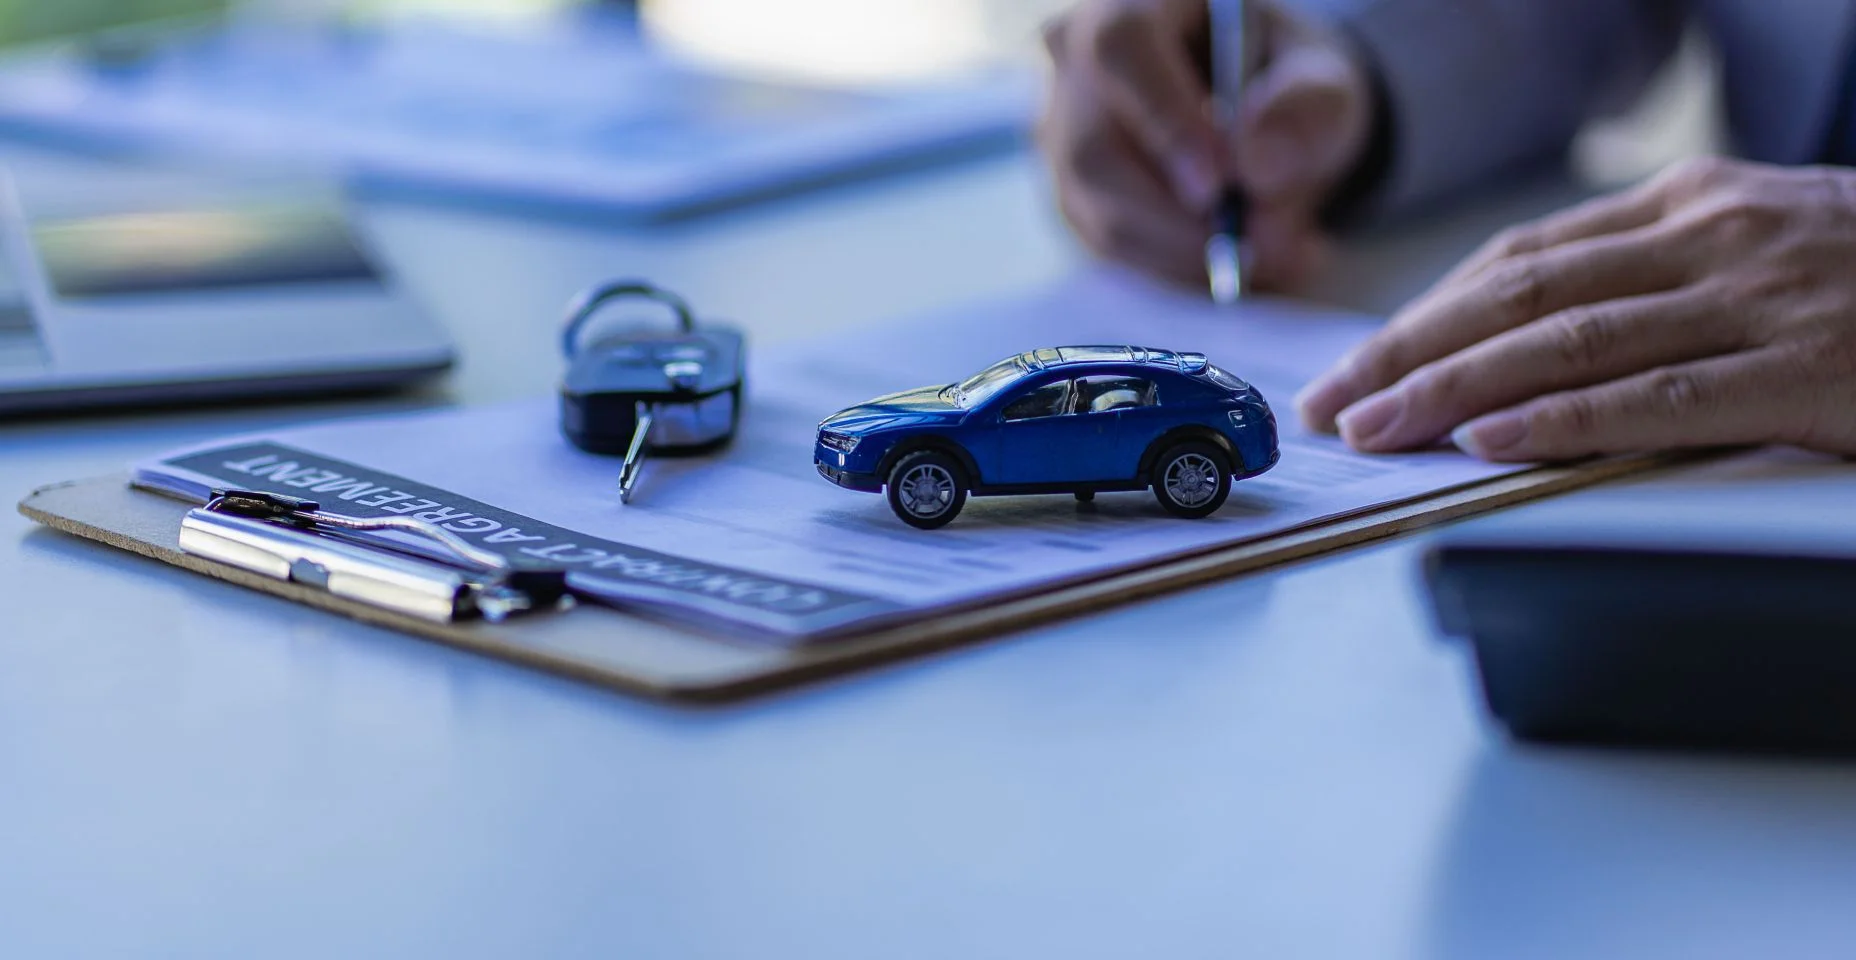 Conceito de vendas de carros, representantes de vendas dão chaves aos clientes na mesa com amostras de carros pequenos e seguro de escritório.